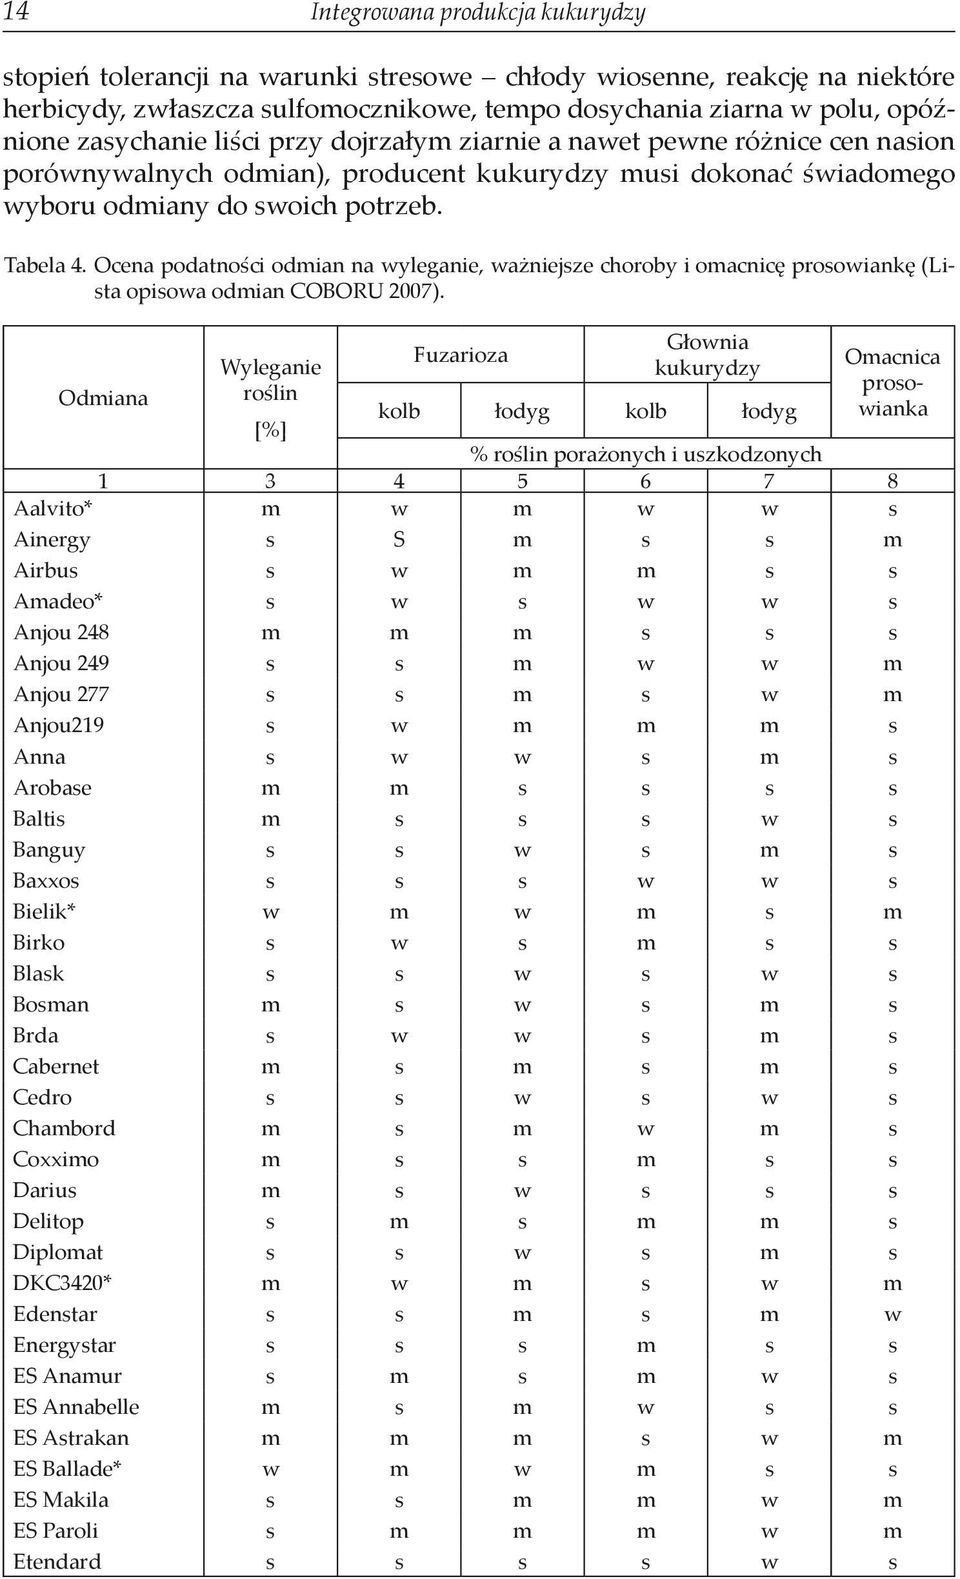 Ocena podatności odmian na wyleganie, ważniejsze choroby i omacnicę prosowiankę (Lista opisowa odmian COBORU 2007).